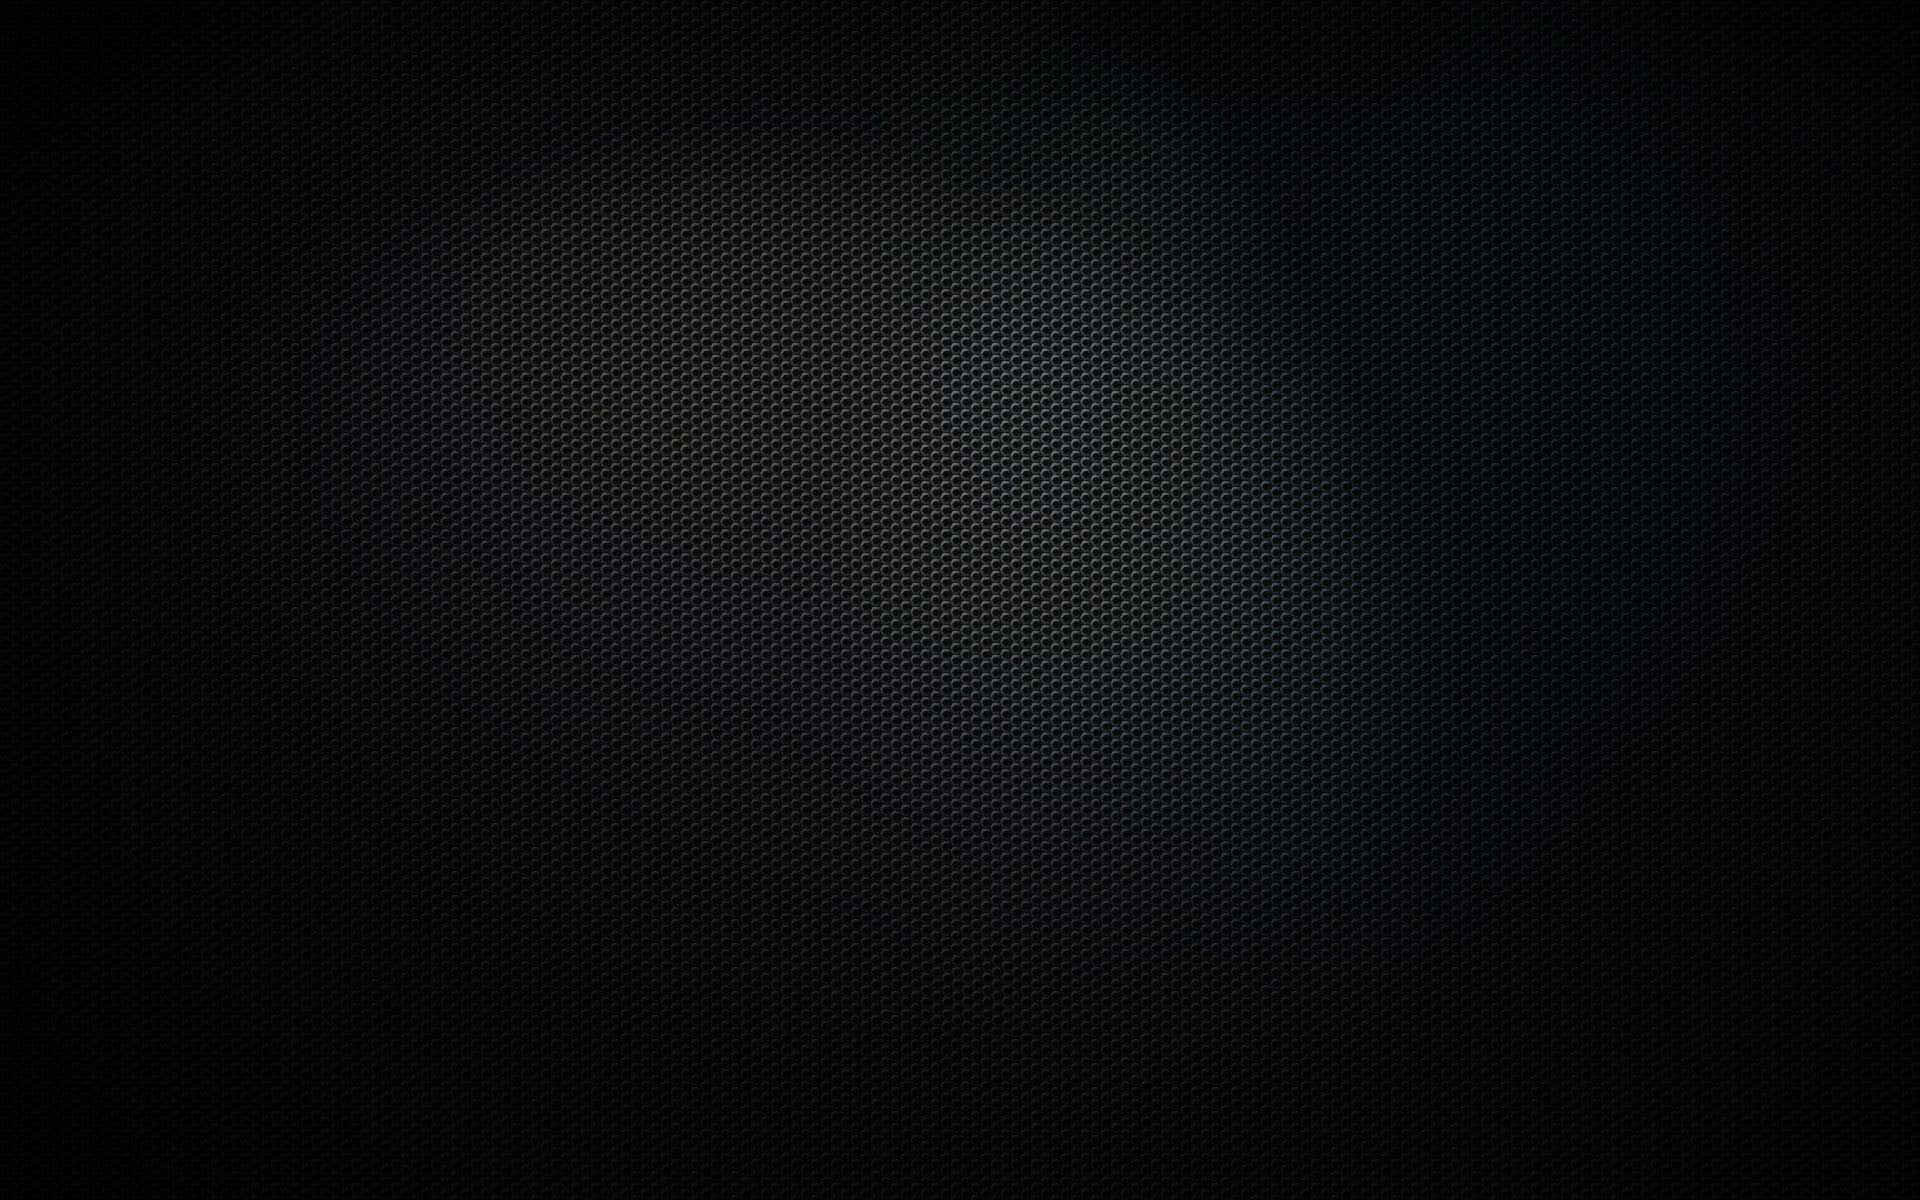 Unasuperficie Elegante De Metal Negro Brilla Bajo La Luz. Fondo de pantalla